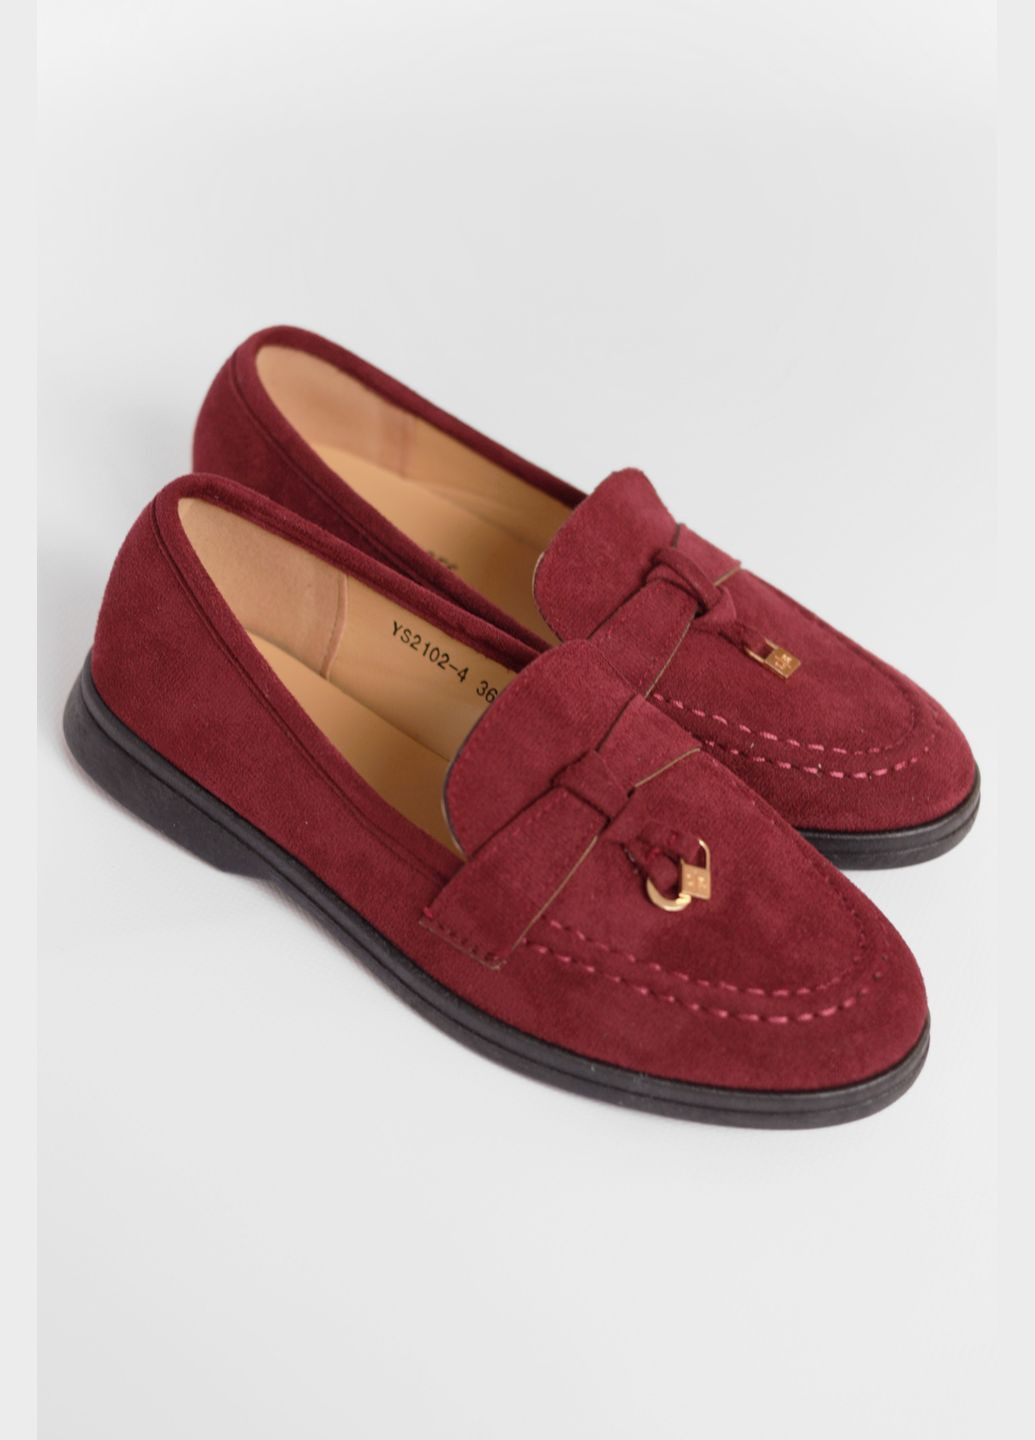 Туфли-лоферы женские бордового цвета Let's Shop с цепочками